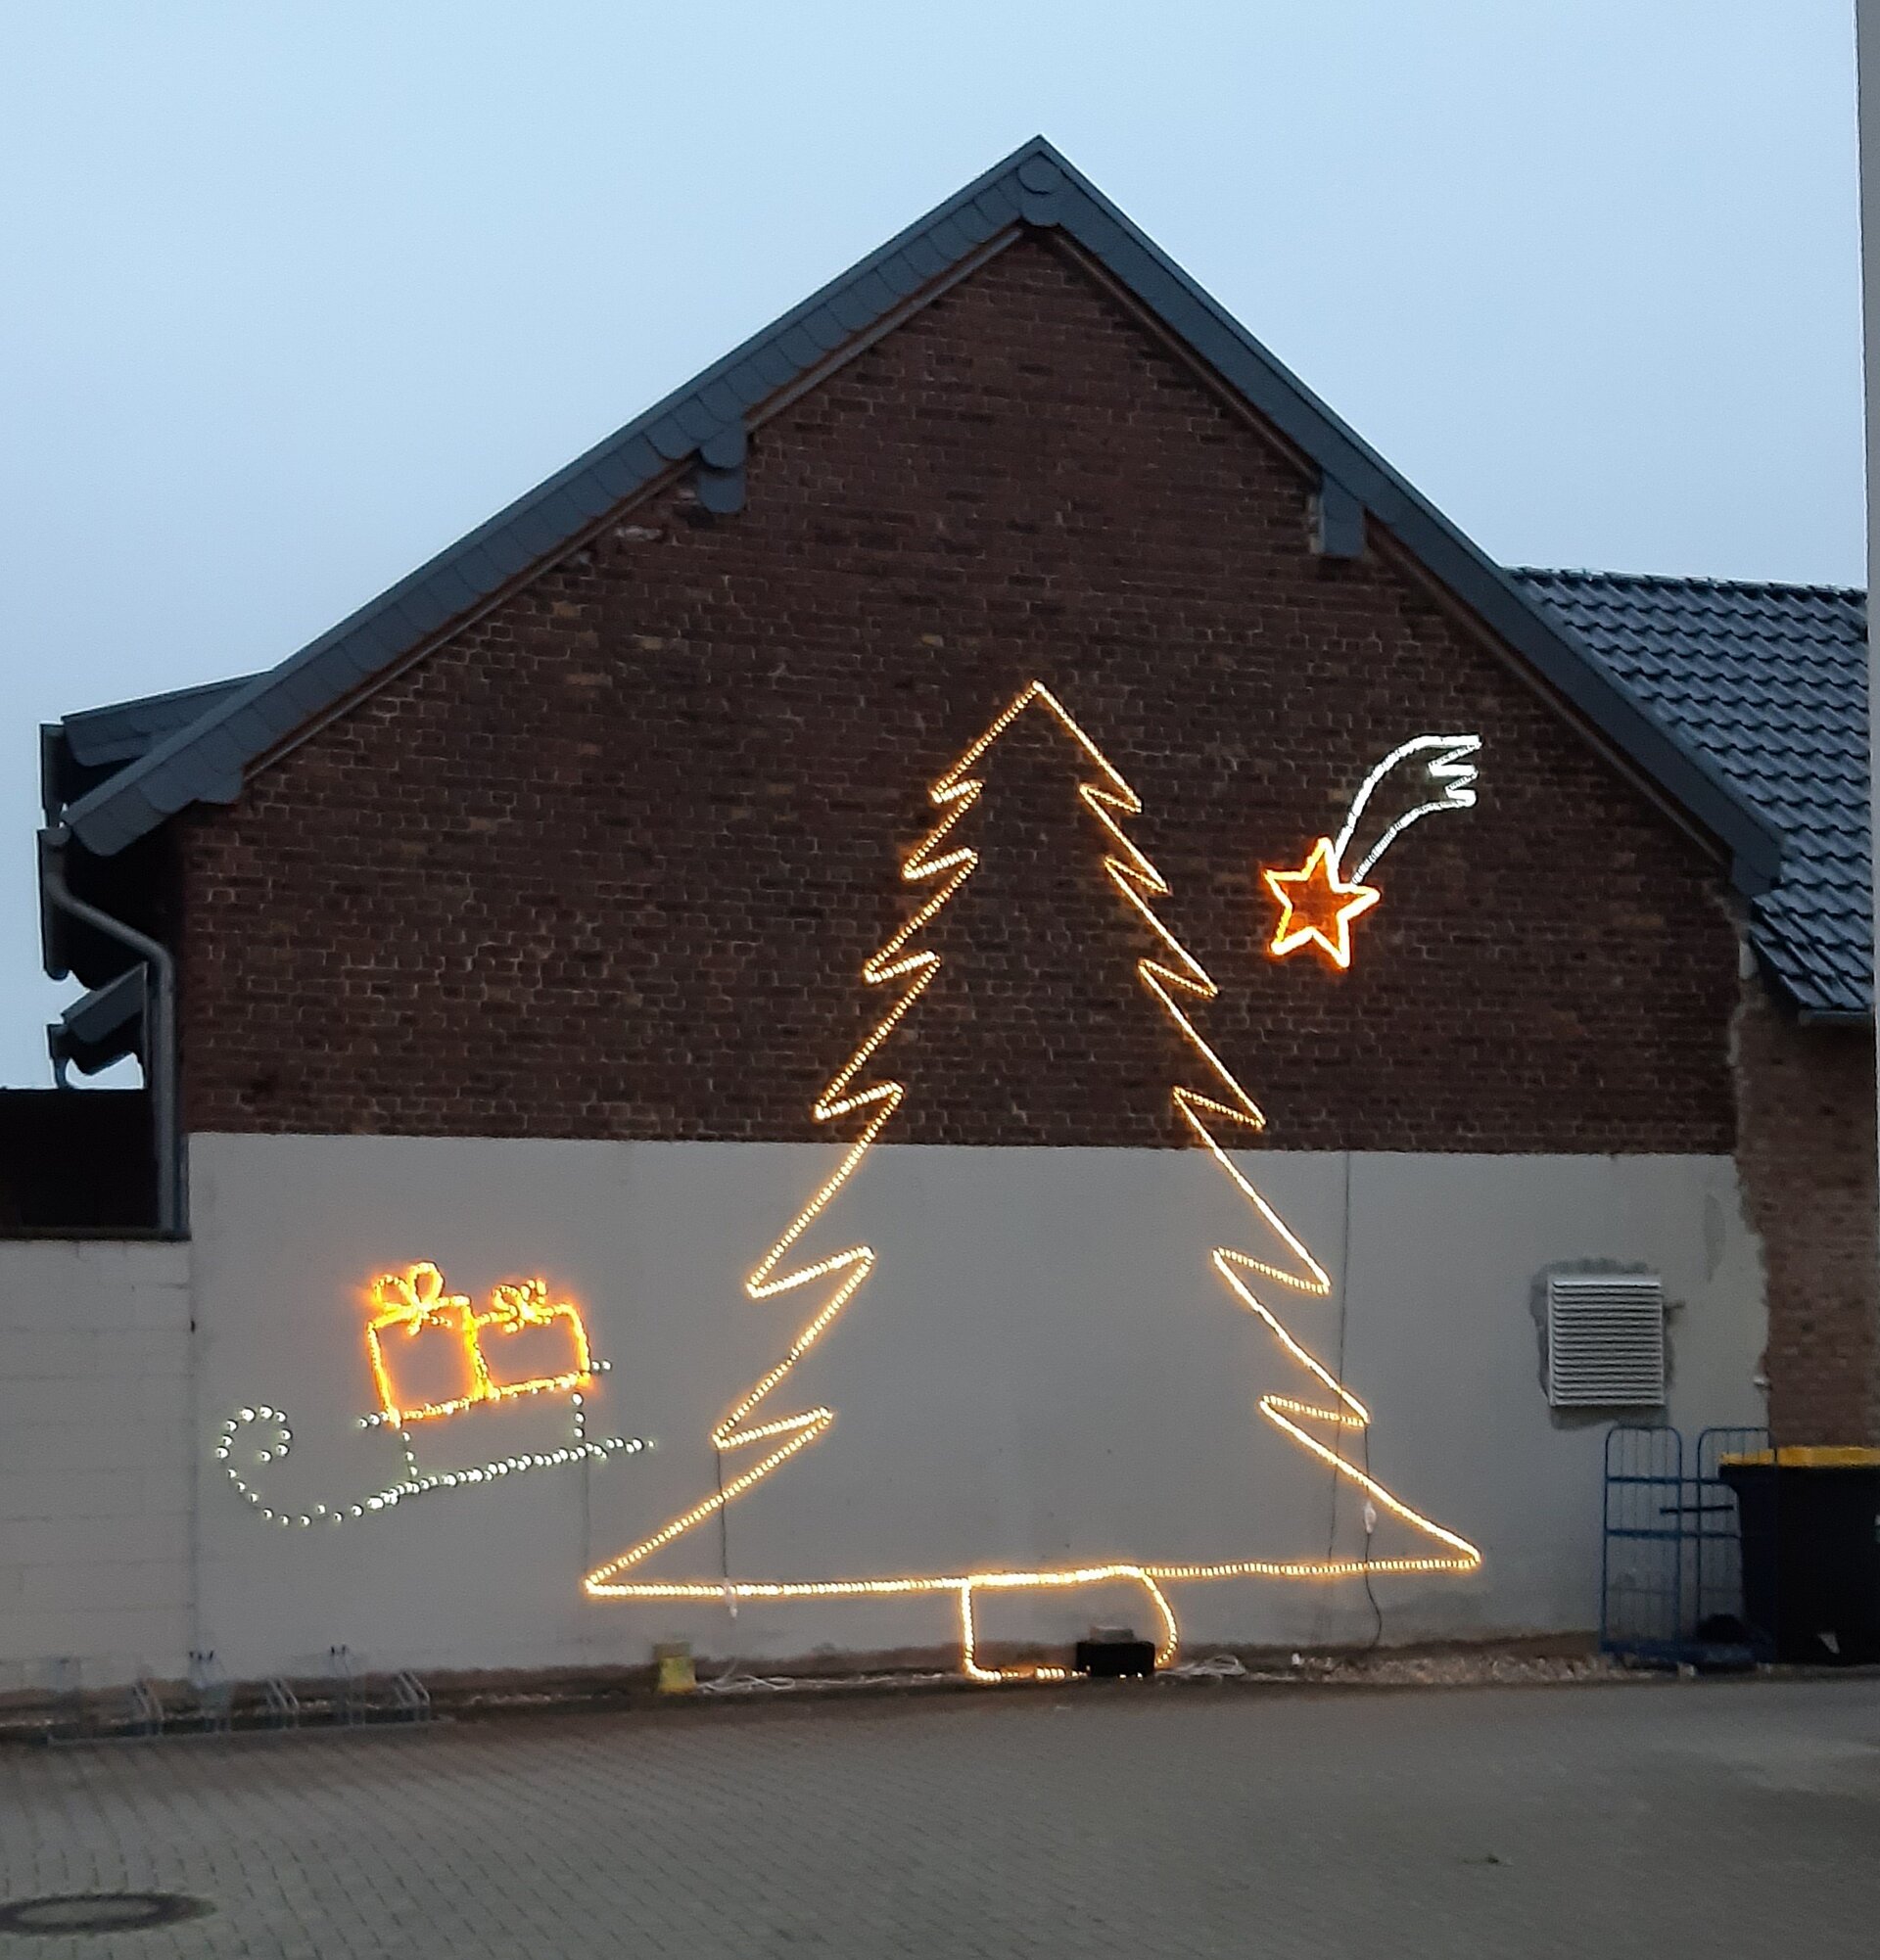 Lichterketten sorgen für weihnachtliche Stimmung im Alloheim Seniorenheim Elsdorf